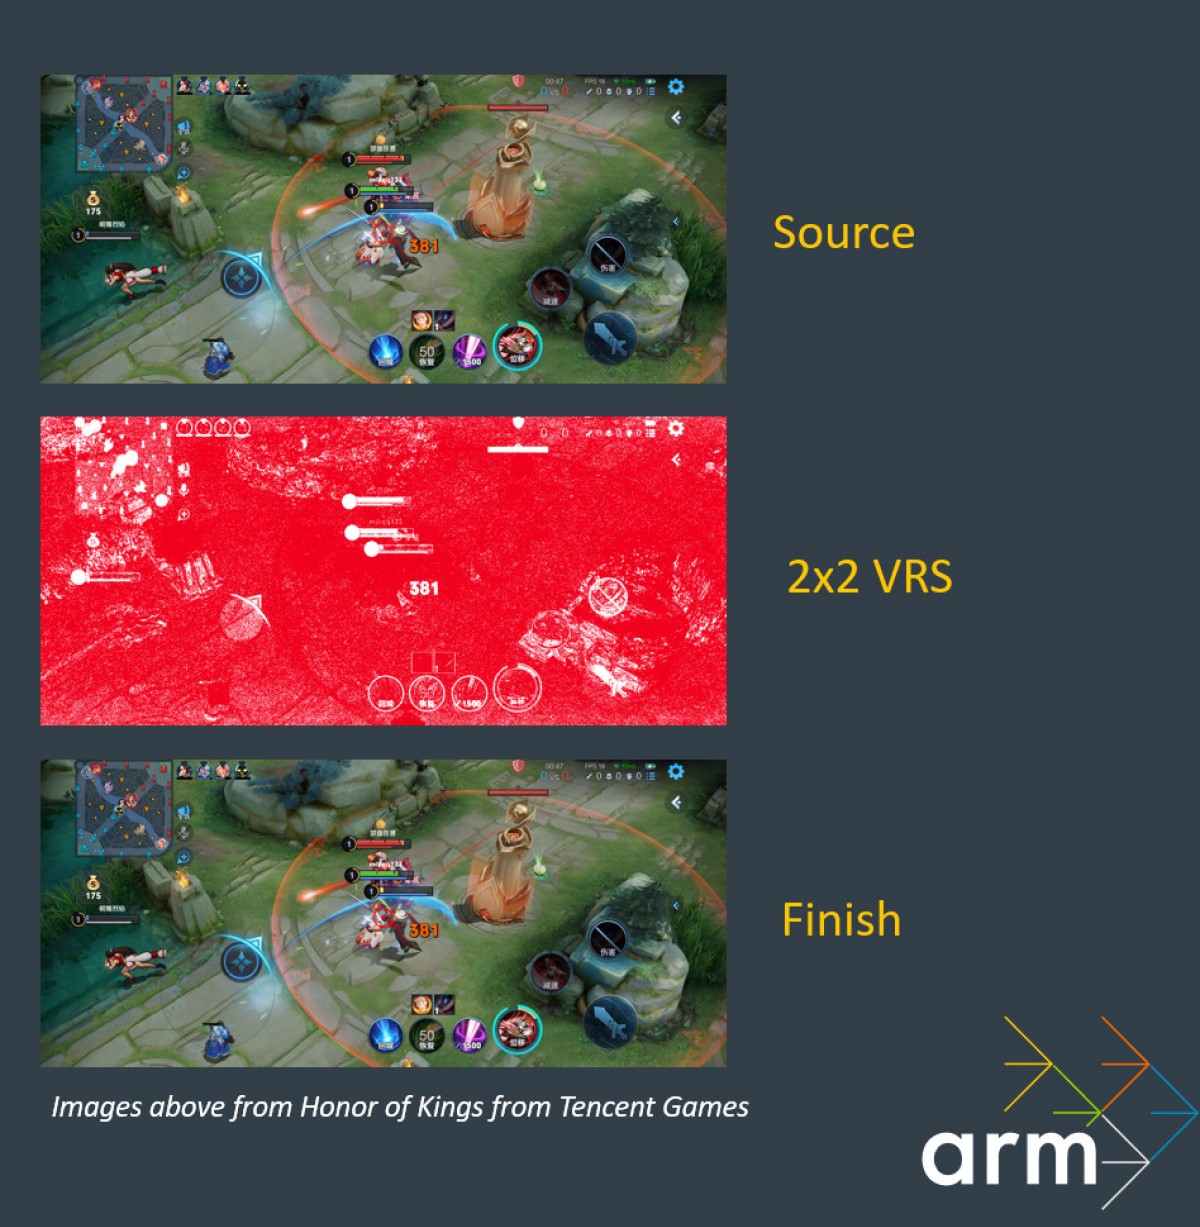 ARM présente Immortalis-G715, son premier GPU avec prise en charge matérielle du lancer de rayons